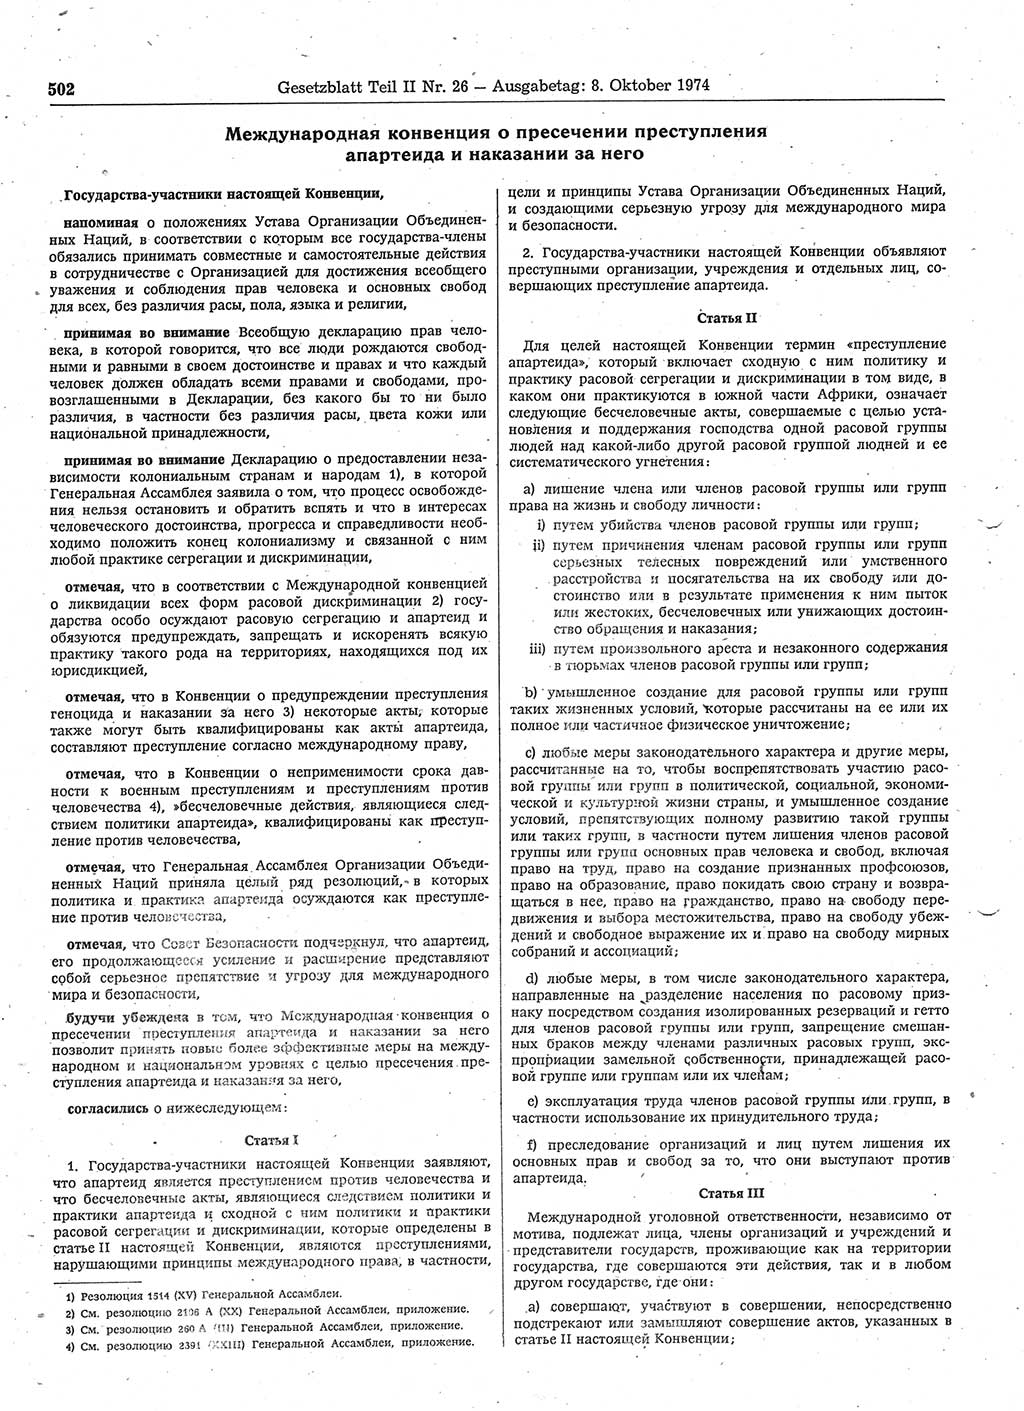 Gesetzblatt (GBl.) der Deutschen Demokratischen Republik (DDR) Teil ⅠⅠ 1974, Seite 502 (GBl. DDR ⅠⅠ 1974, S. 502)